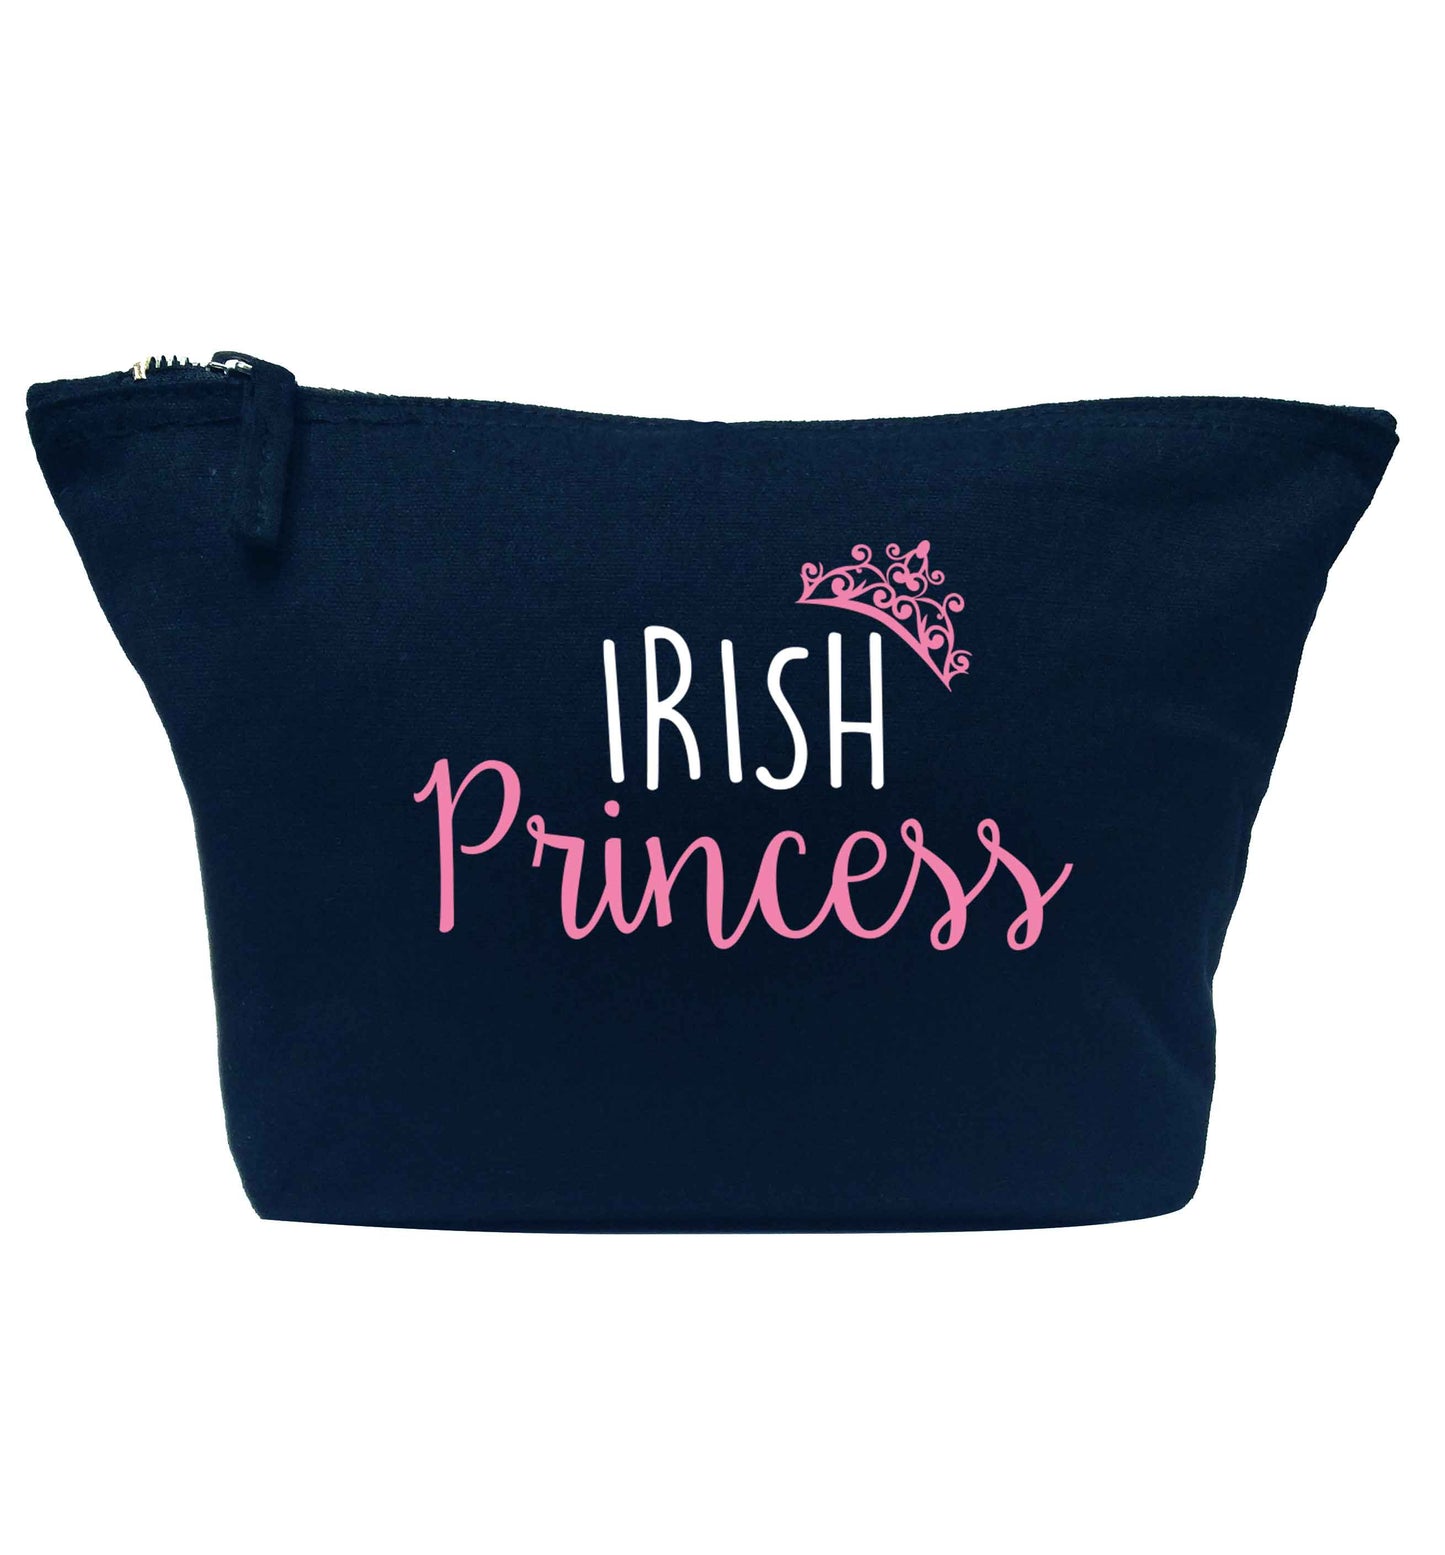 Irish princess navy makeup bag